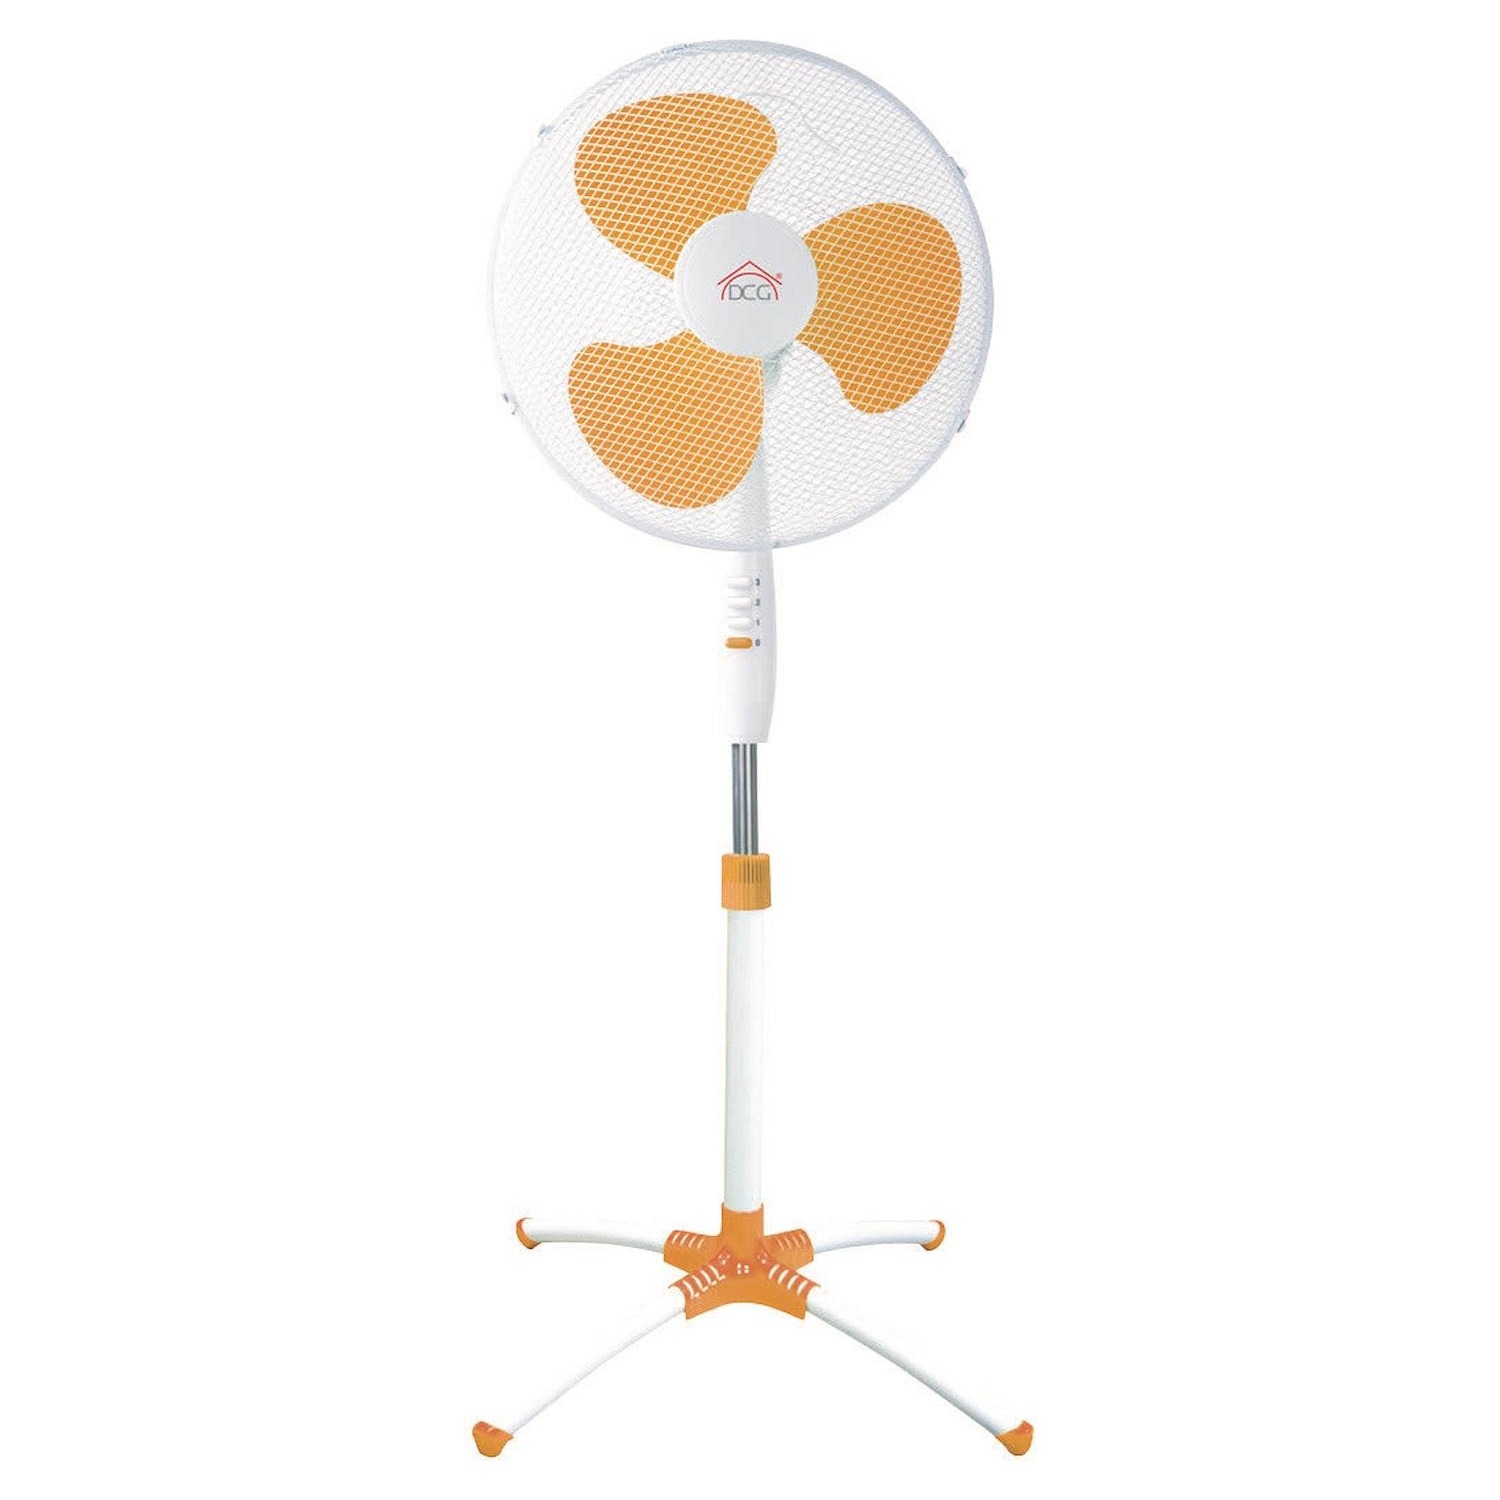 Immagine per Ventilatore DCG VE 1626 a piantana arancione da DIMOStore